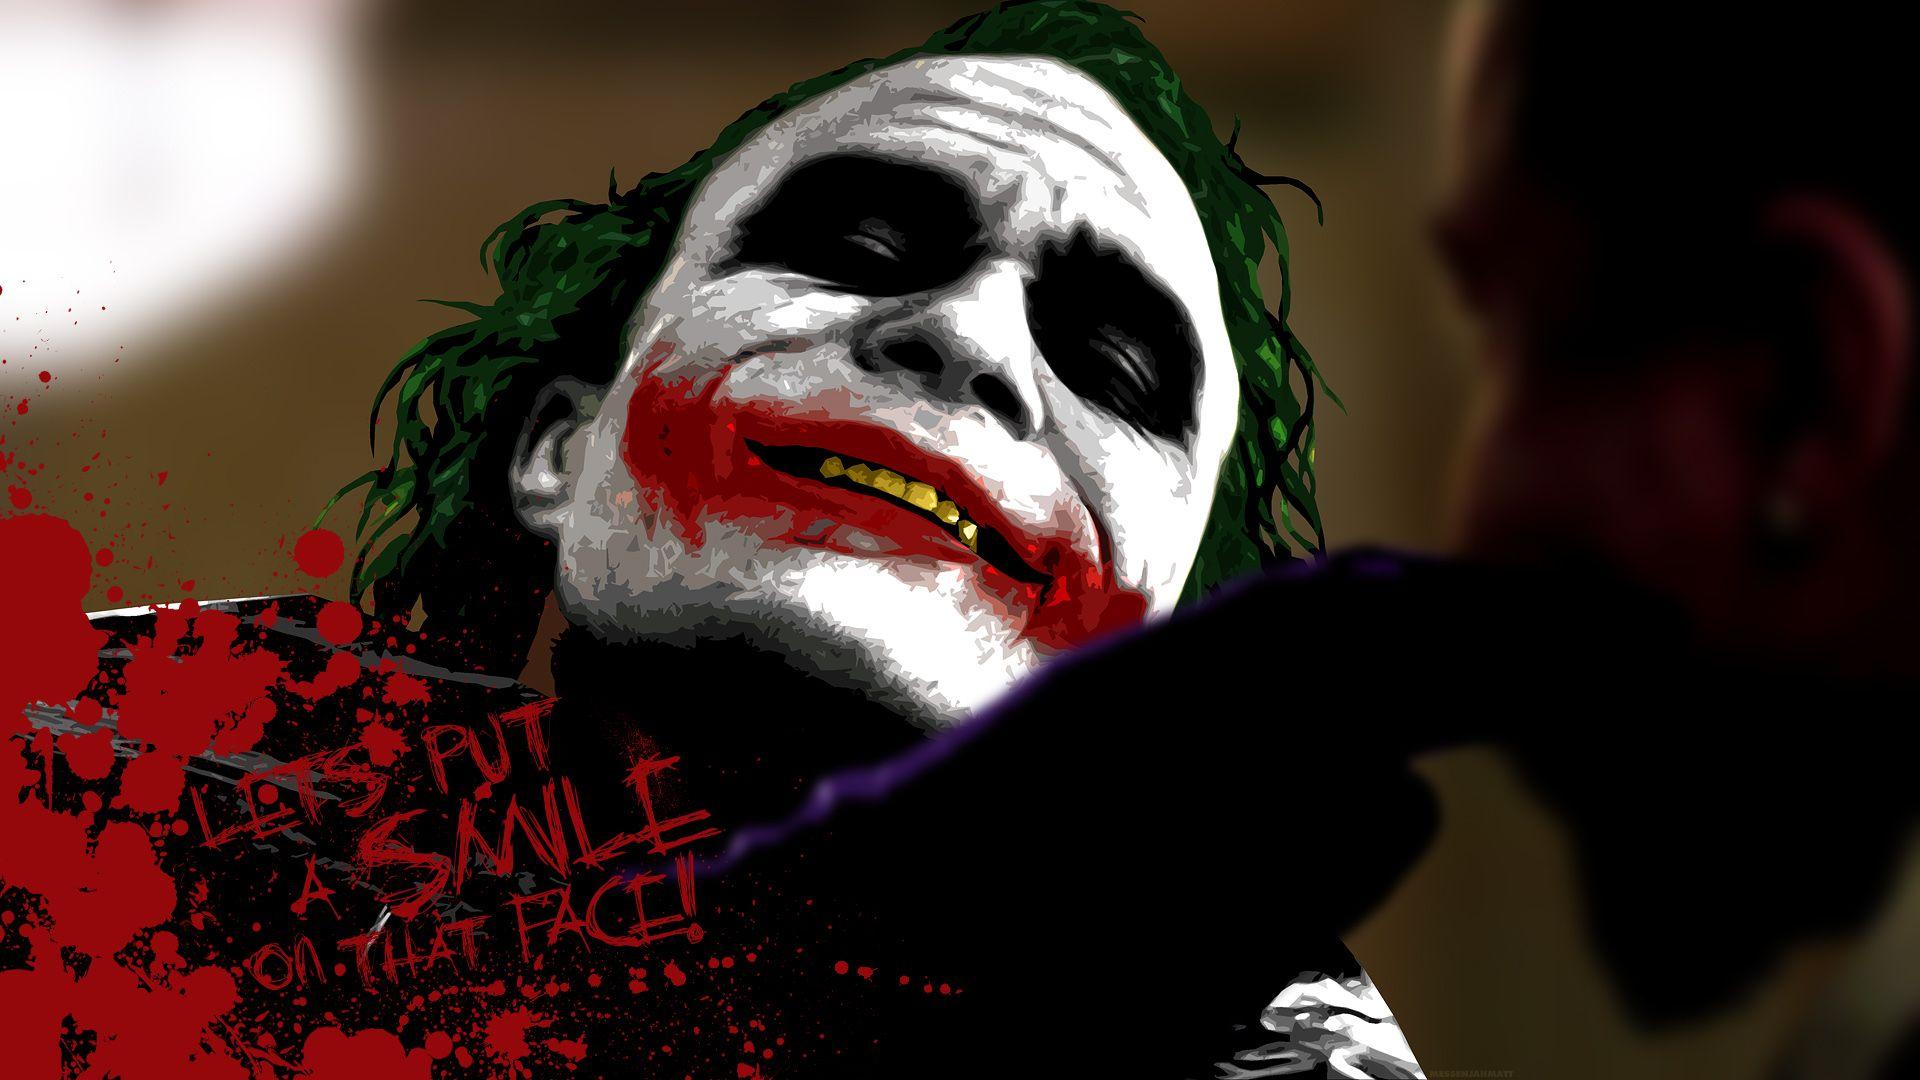 Hd Wallpaper Joker Dark Knight